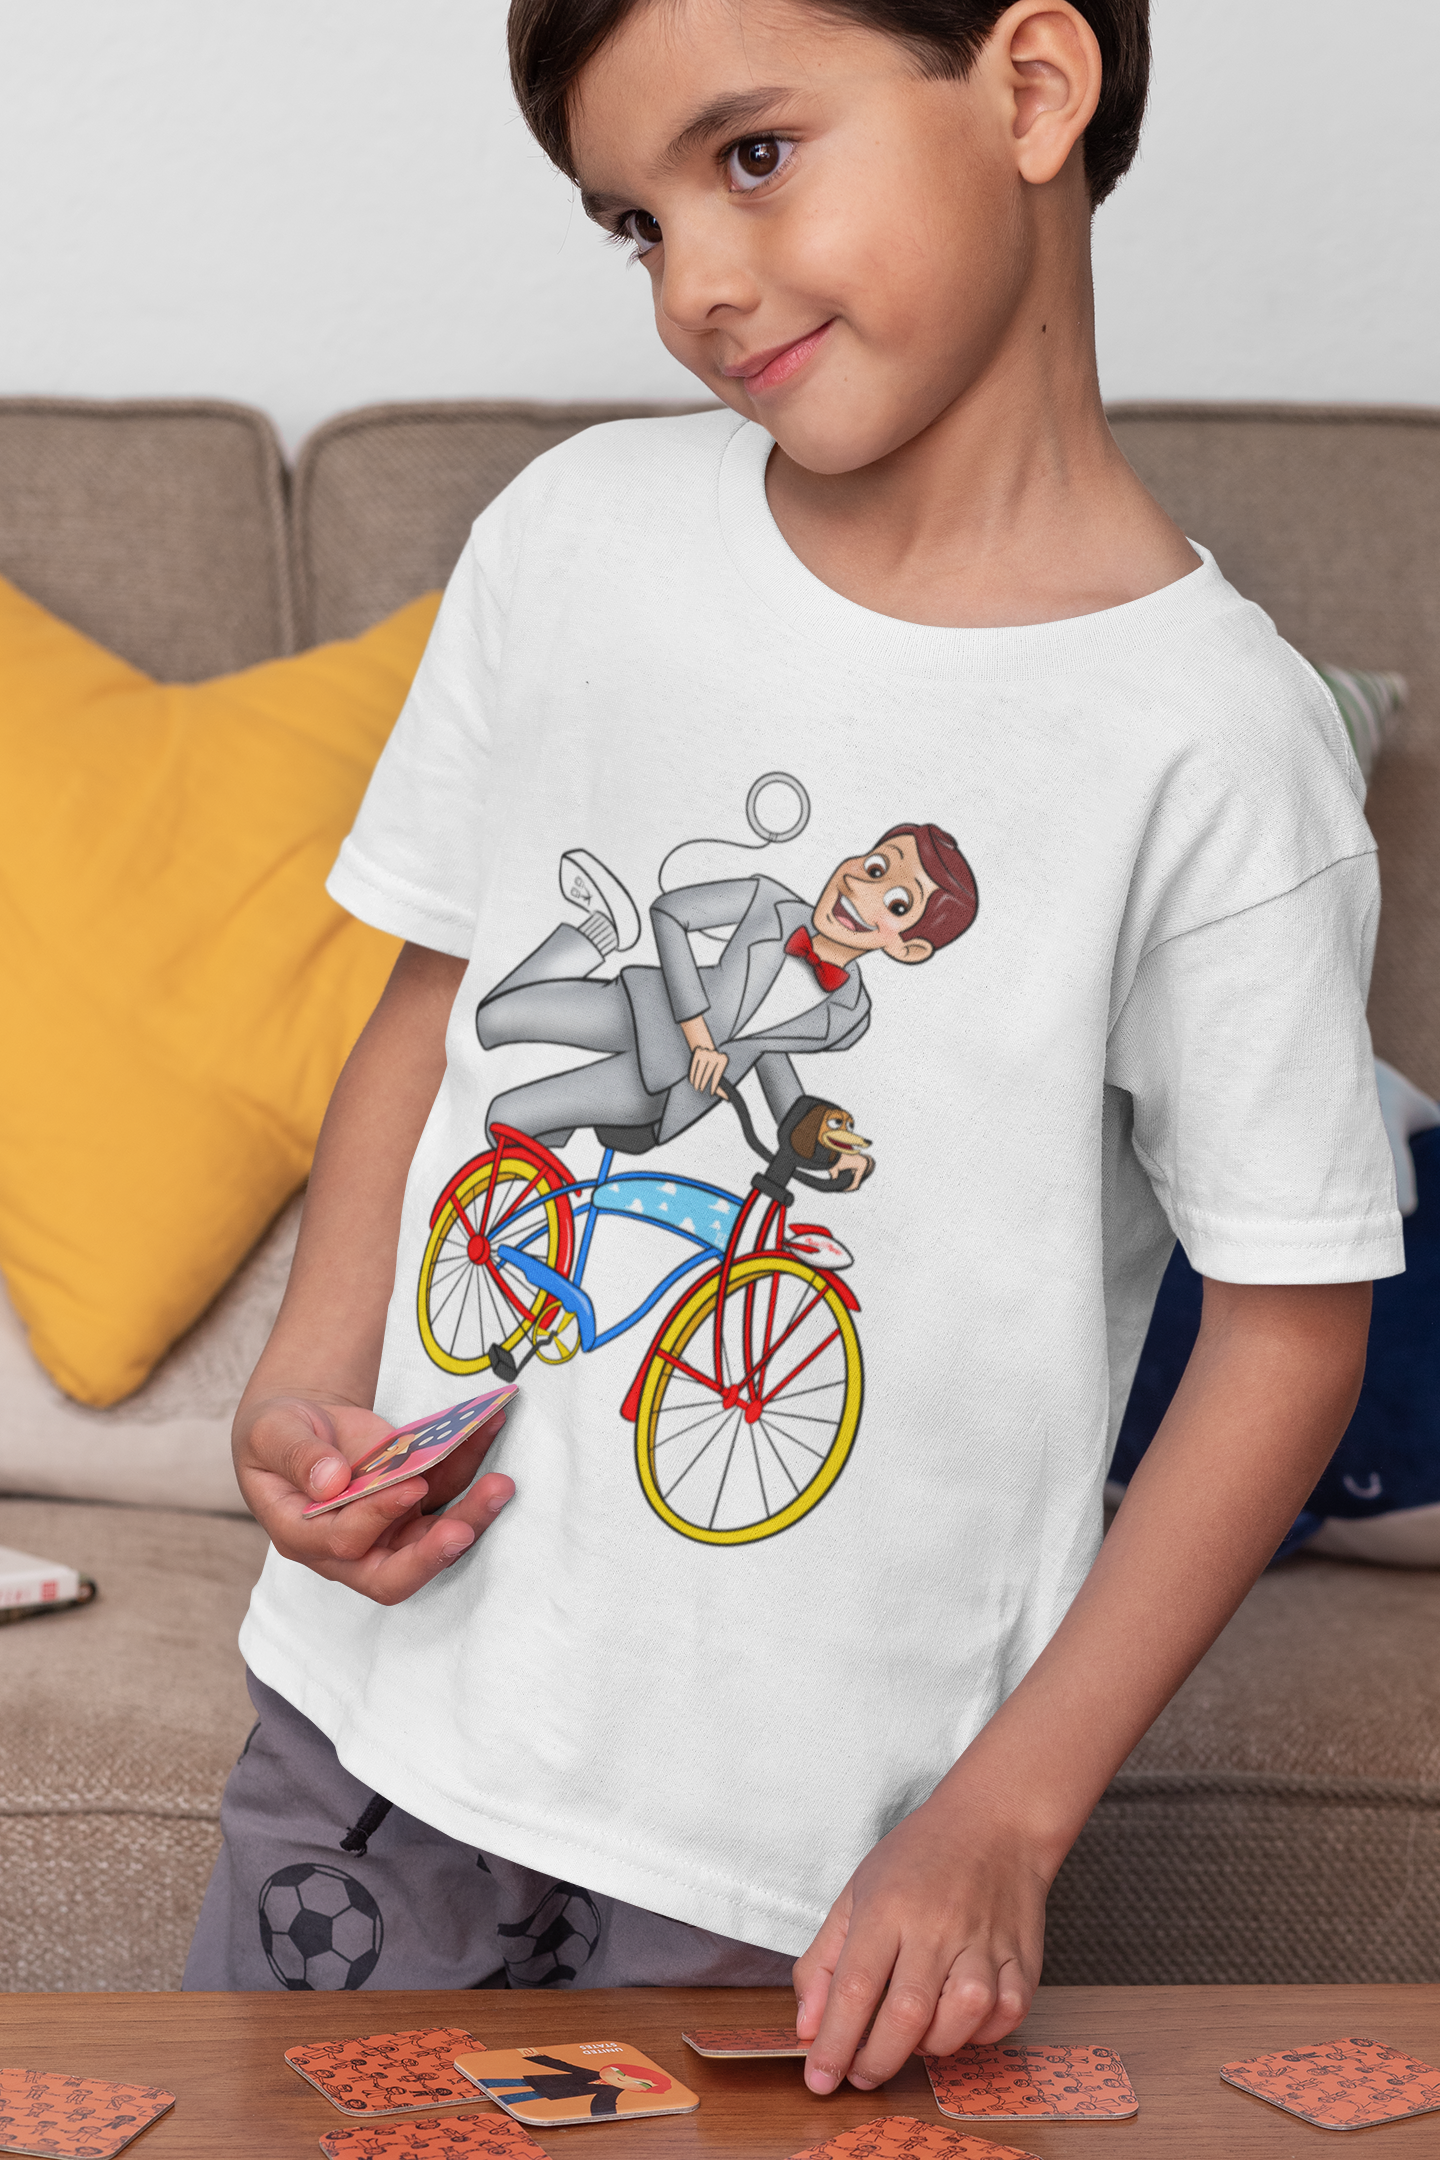 WOODY'S BIG ADVENTURE: Woody as Pee-Wee Herman Youth T-Shirt